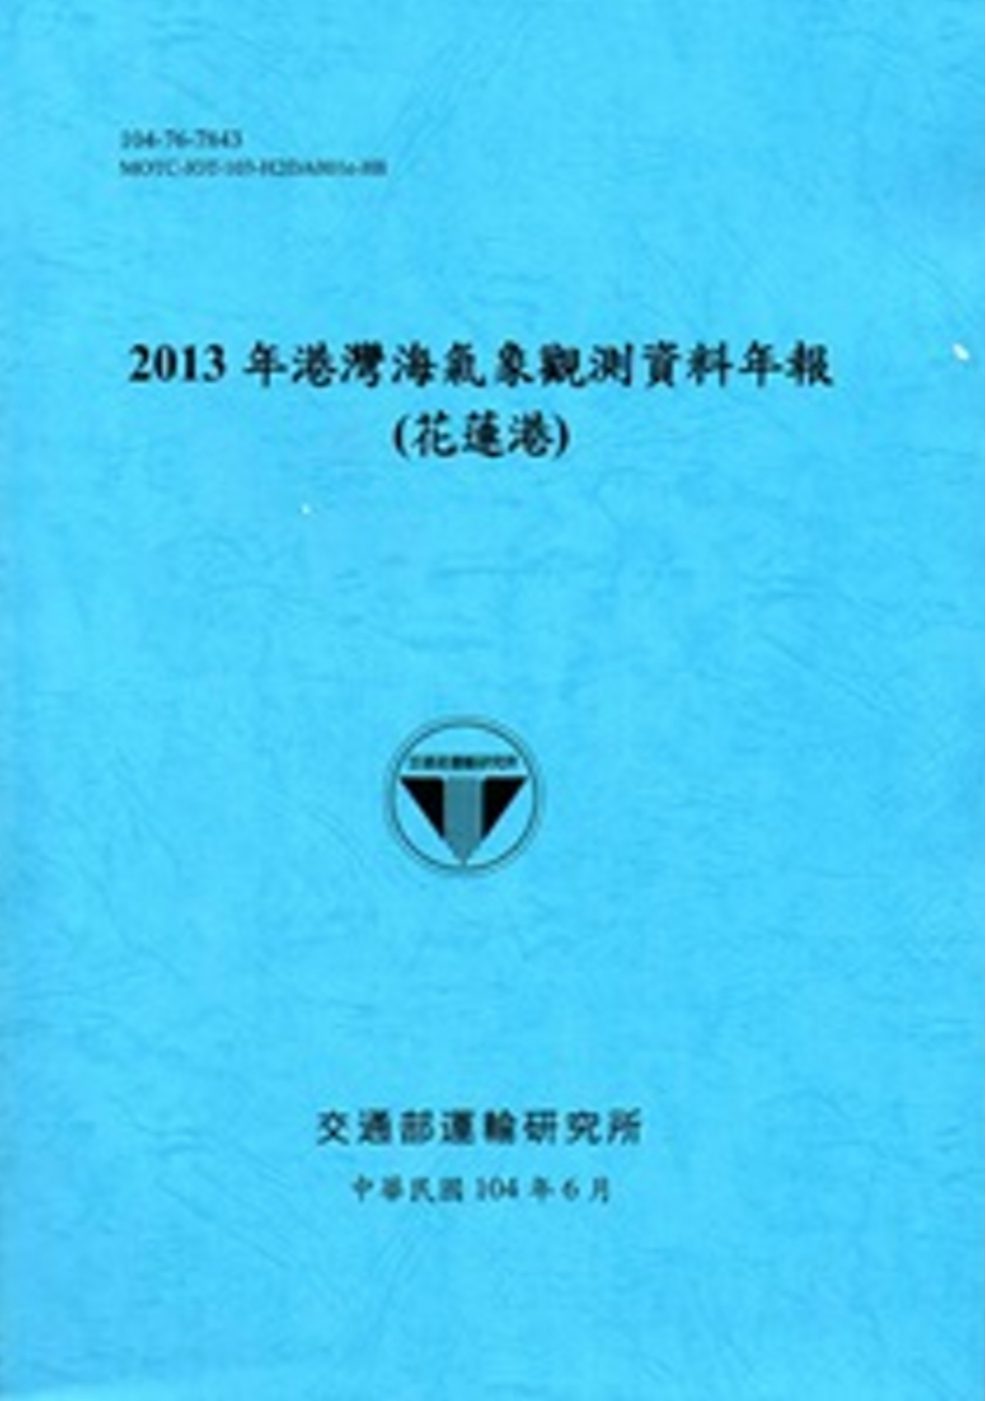 港灣海氣象觀測資料年報(花蓮港)•2013年[104藍]